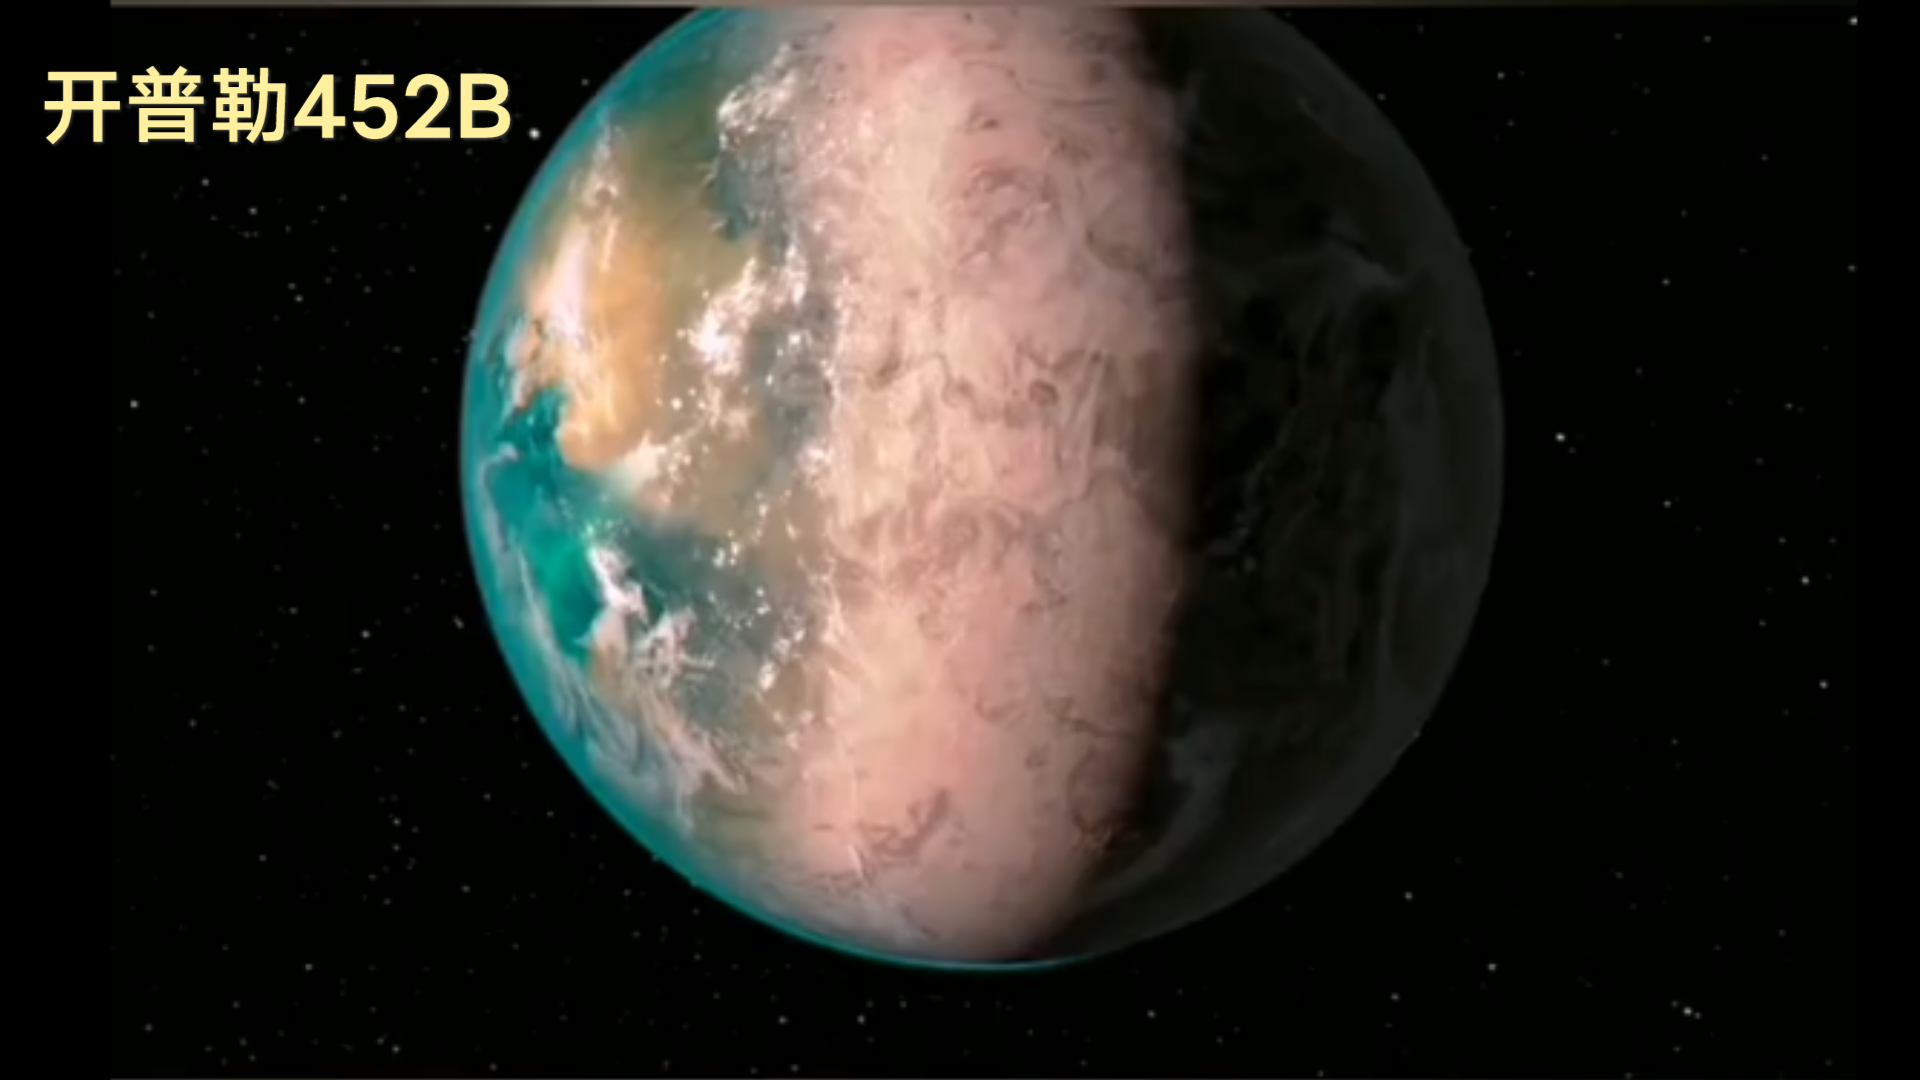 开普勒452b,在1400光年外地球的孪生兄弟,等待人类探索